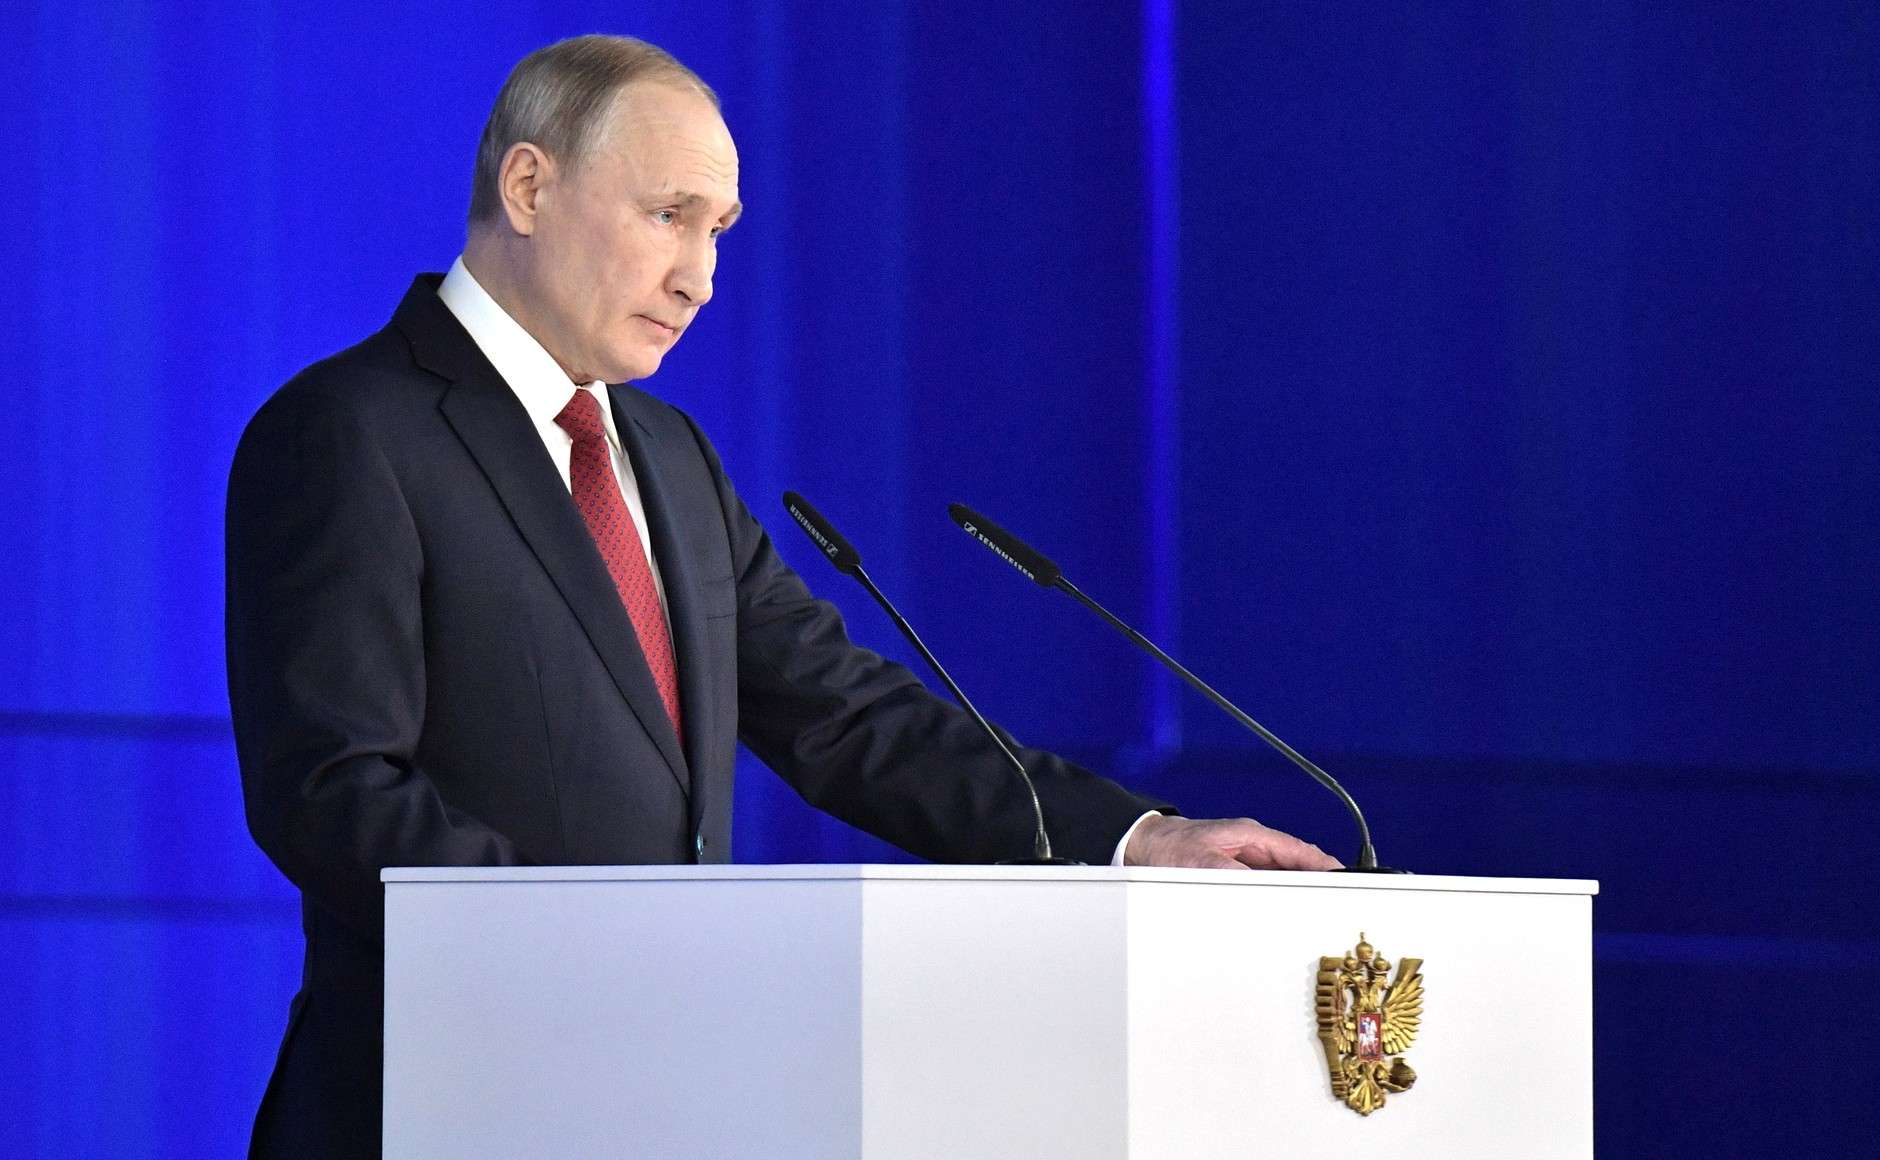 Η Ρωσία θα συνεργασθεί με τη νέα αμερικανική κυβέρνηση όποια κι αν είναι δηλώνει ο Πούτιν